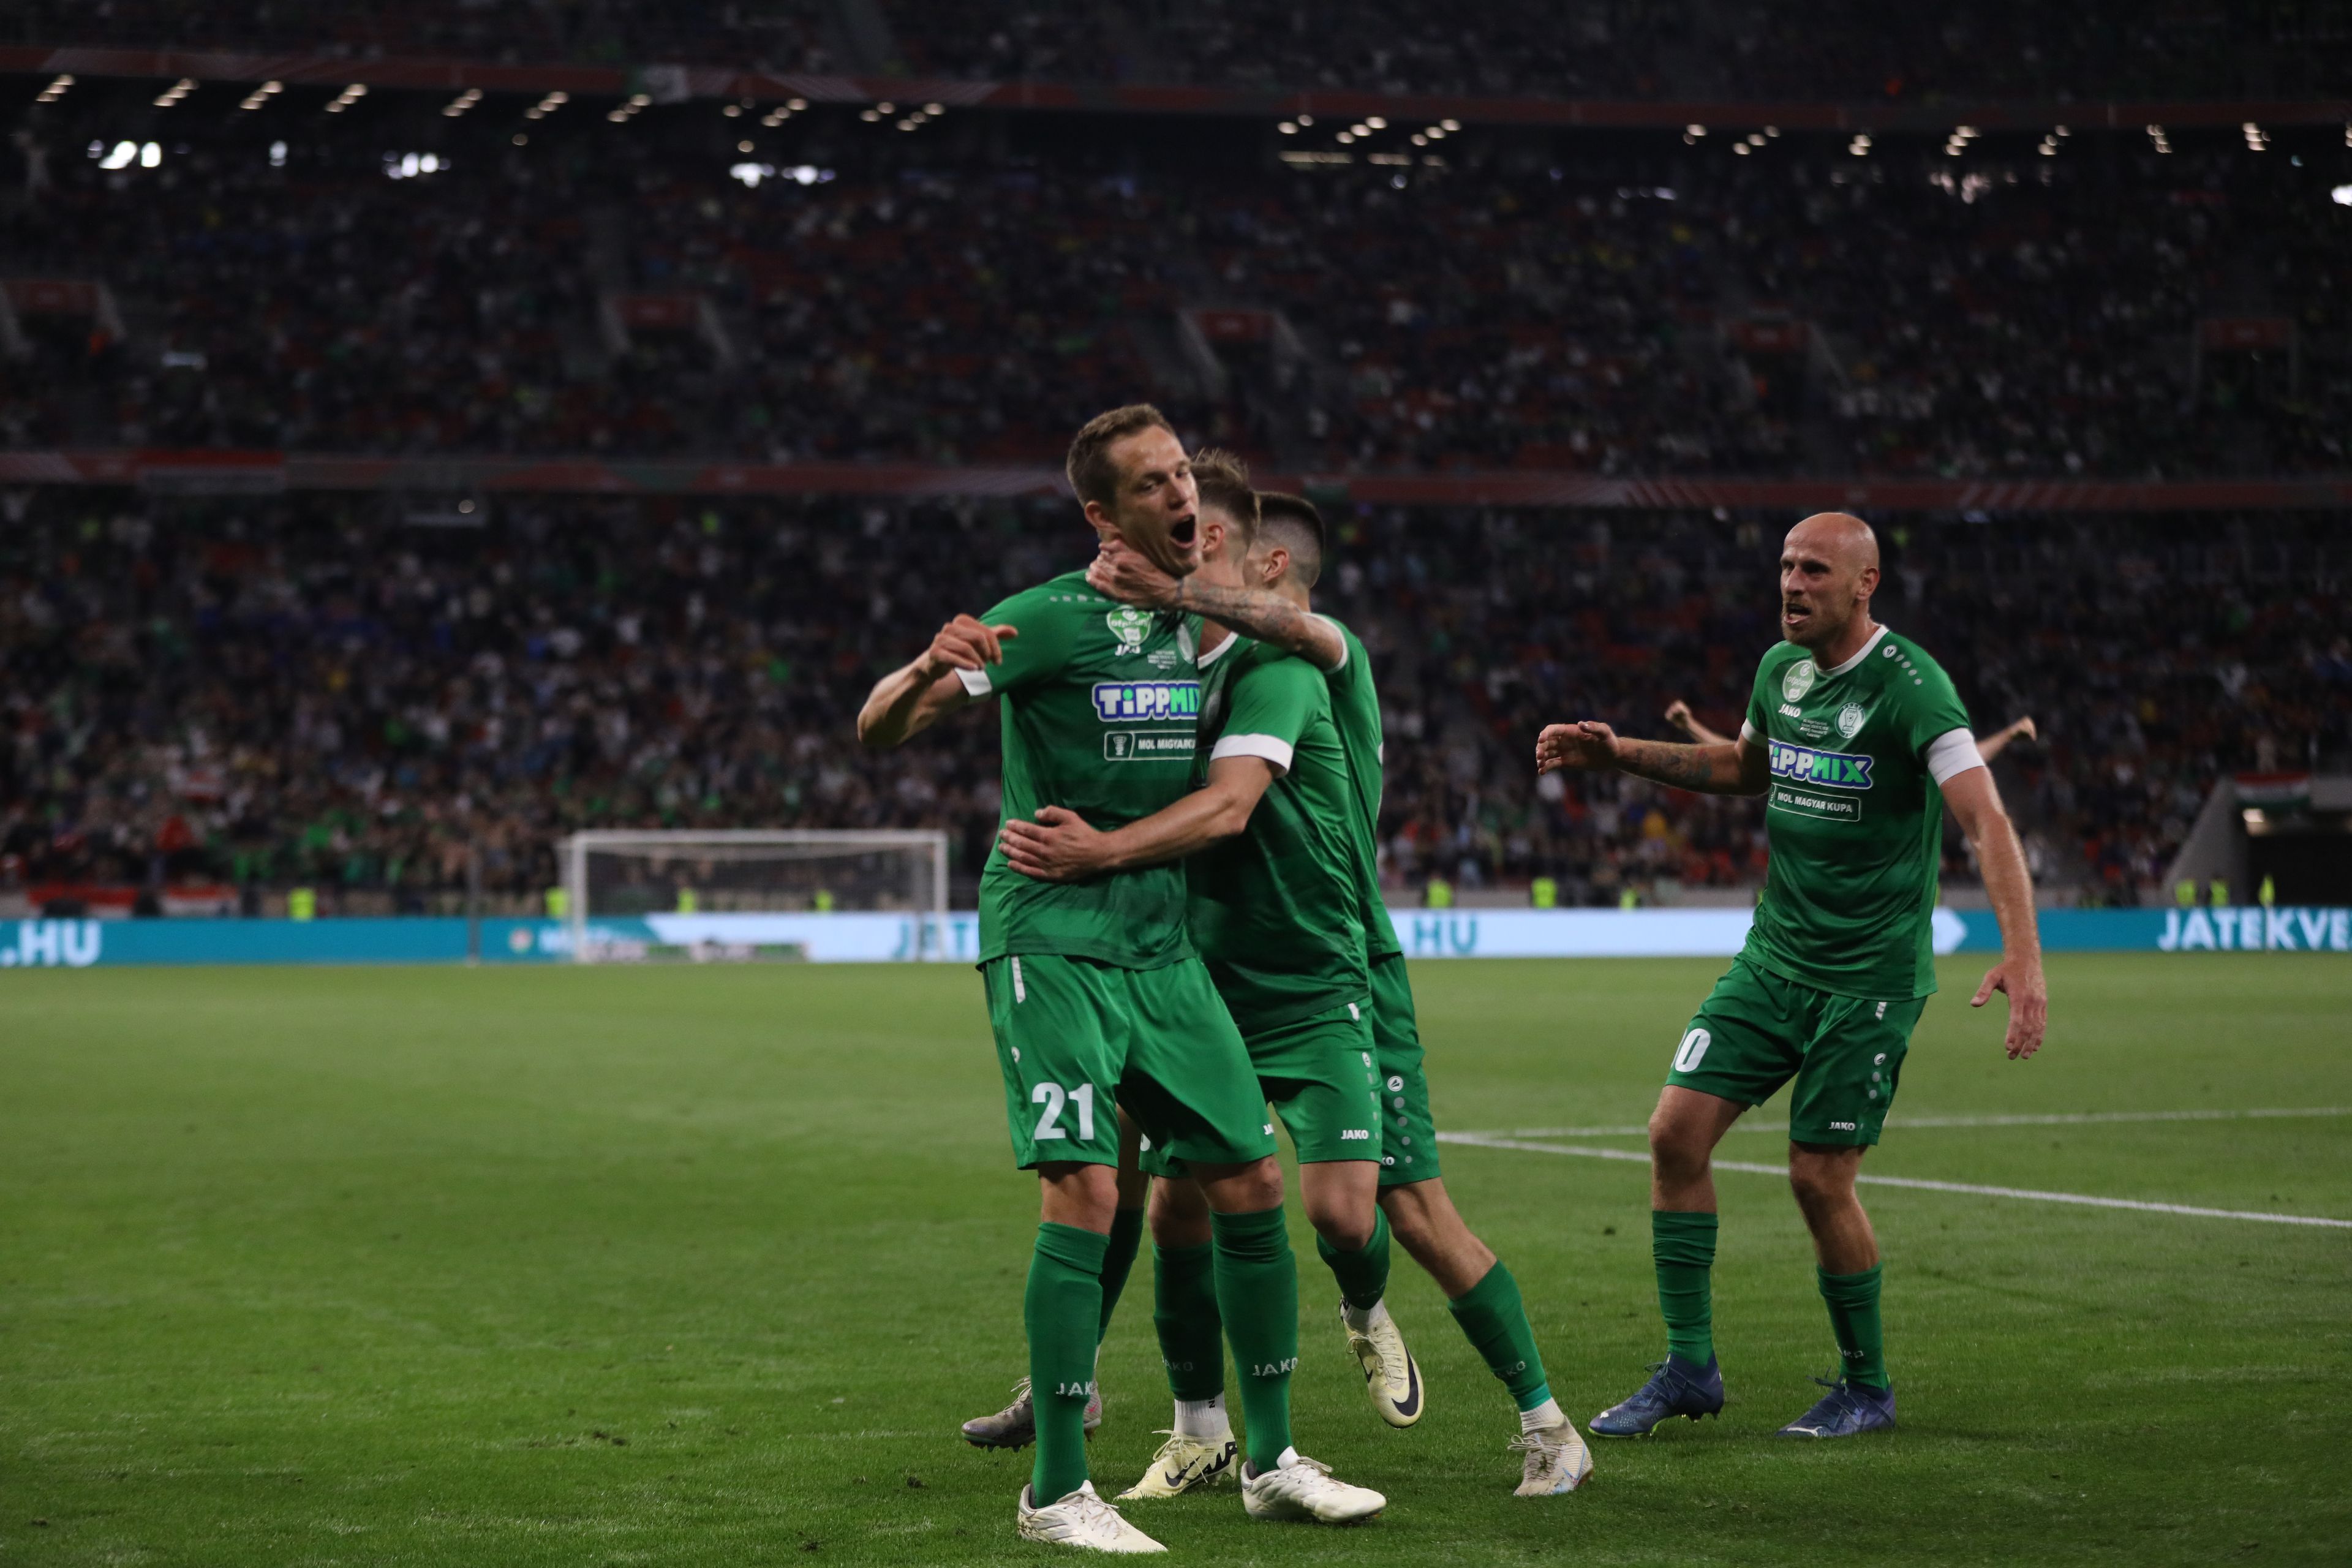 Élő: Papp góljával vezet a Paks a Ferencváros ellen a Magyar Kupa döntőben